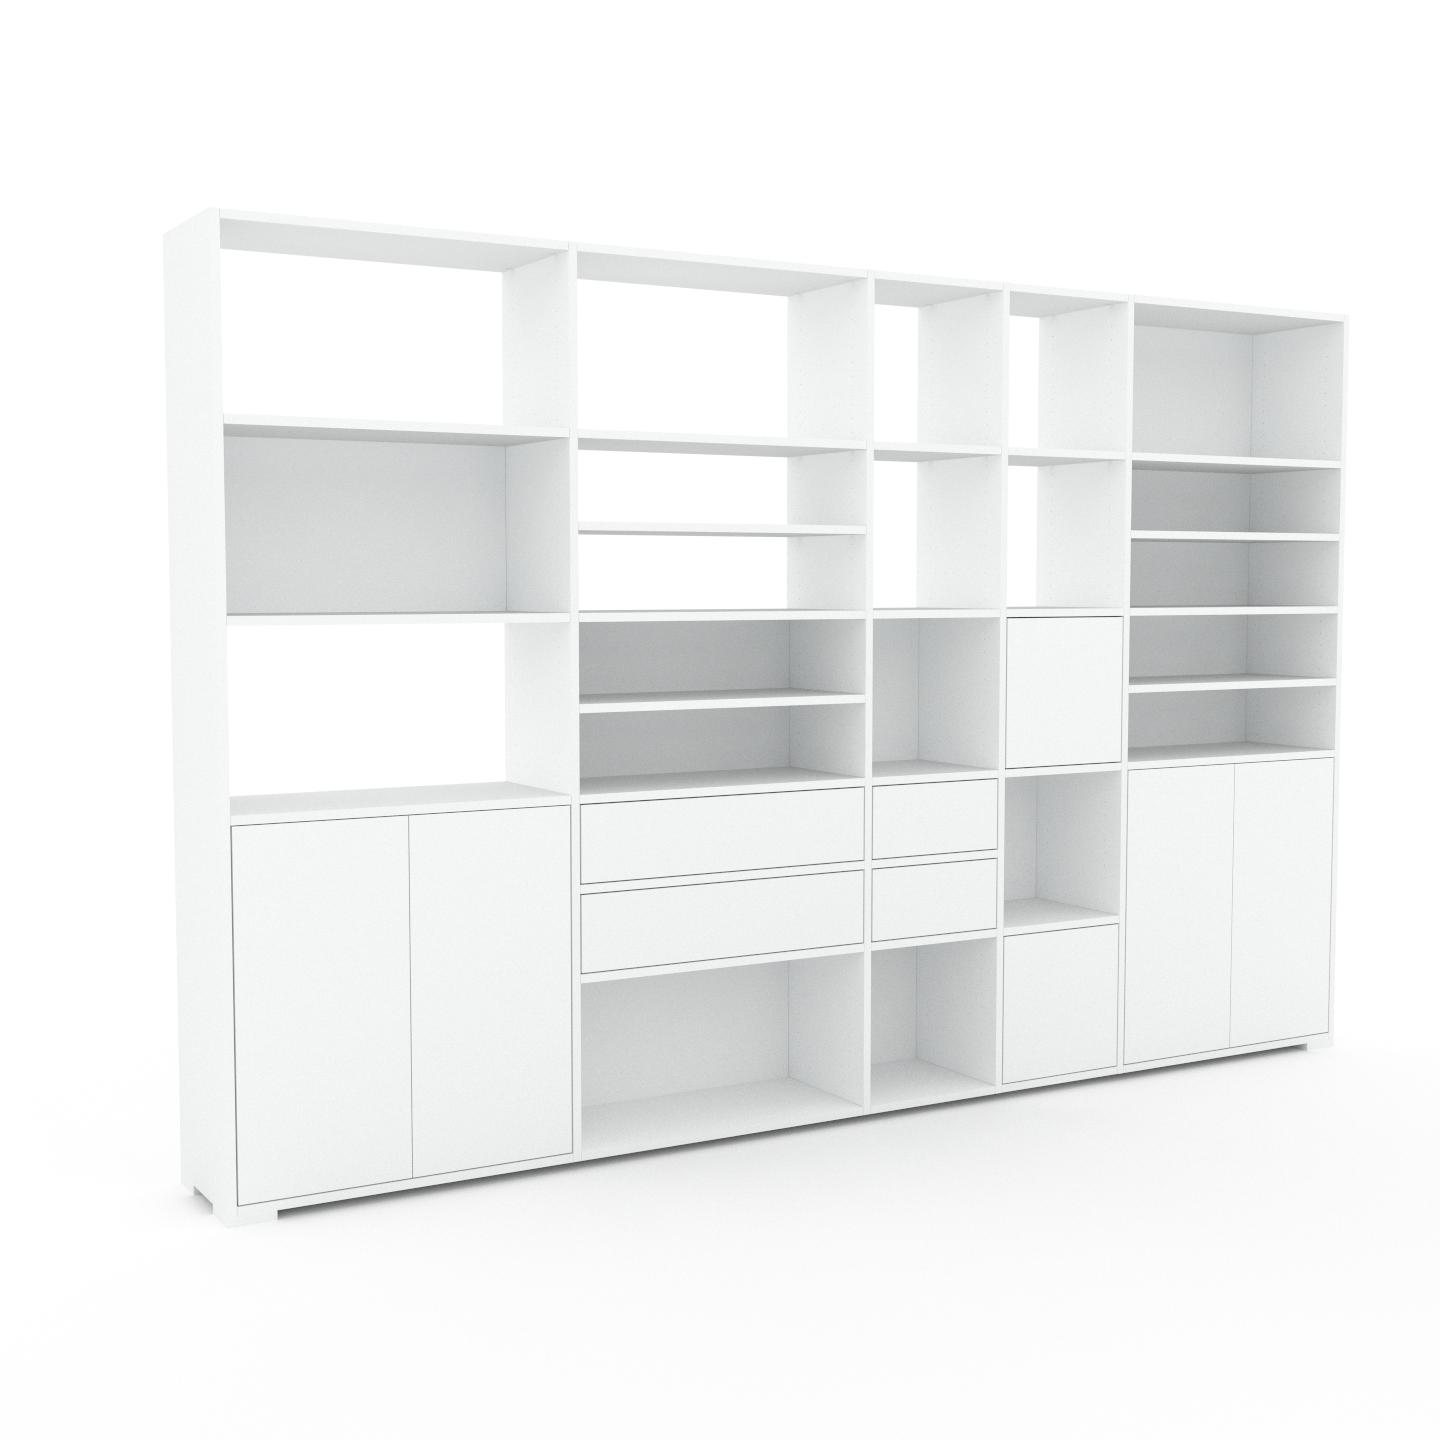 MYCS Wohnwand Weiß - Individuelle Designer-Regalwand: Schubladen in Weiß & Türen in Weiß - Hochwertige Materialien - 303 x 196 x 35 cm, Konfigurator